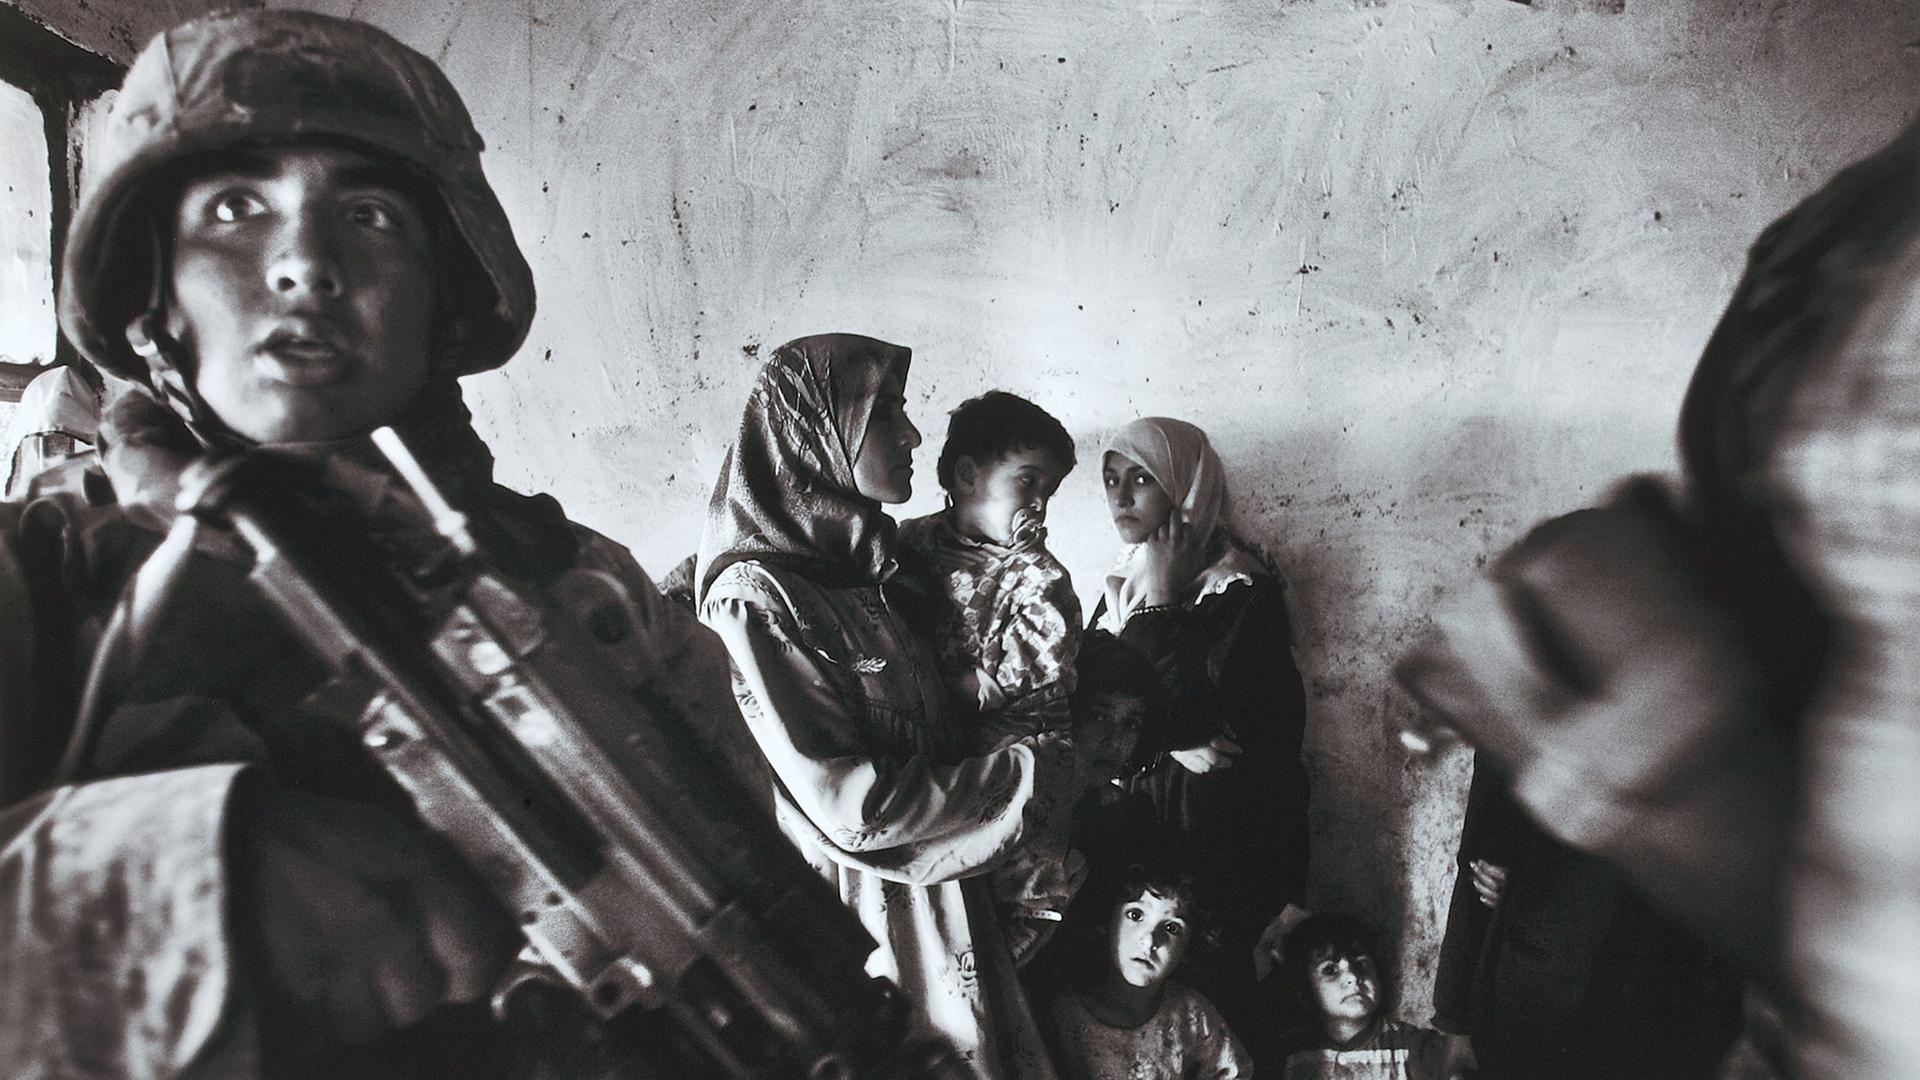 Ein Schwarz-weiß-Foto von Anja Niedringhaus: US-Marineinfanteristen mit Gewehren führen Ende 2004 eine Razzia im Haus eines irakischen Abgeordneten im Stadtteil Abu Ghraib durch. Zwei Frauen mit Kopftuch stehen mit mehreren Kindern an der Wand.